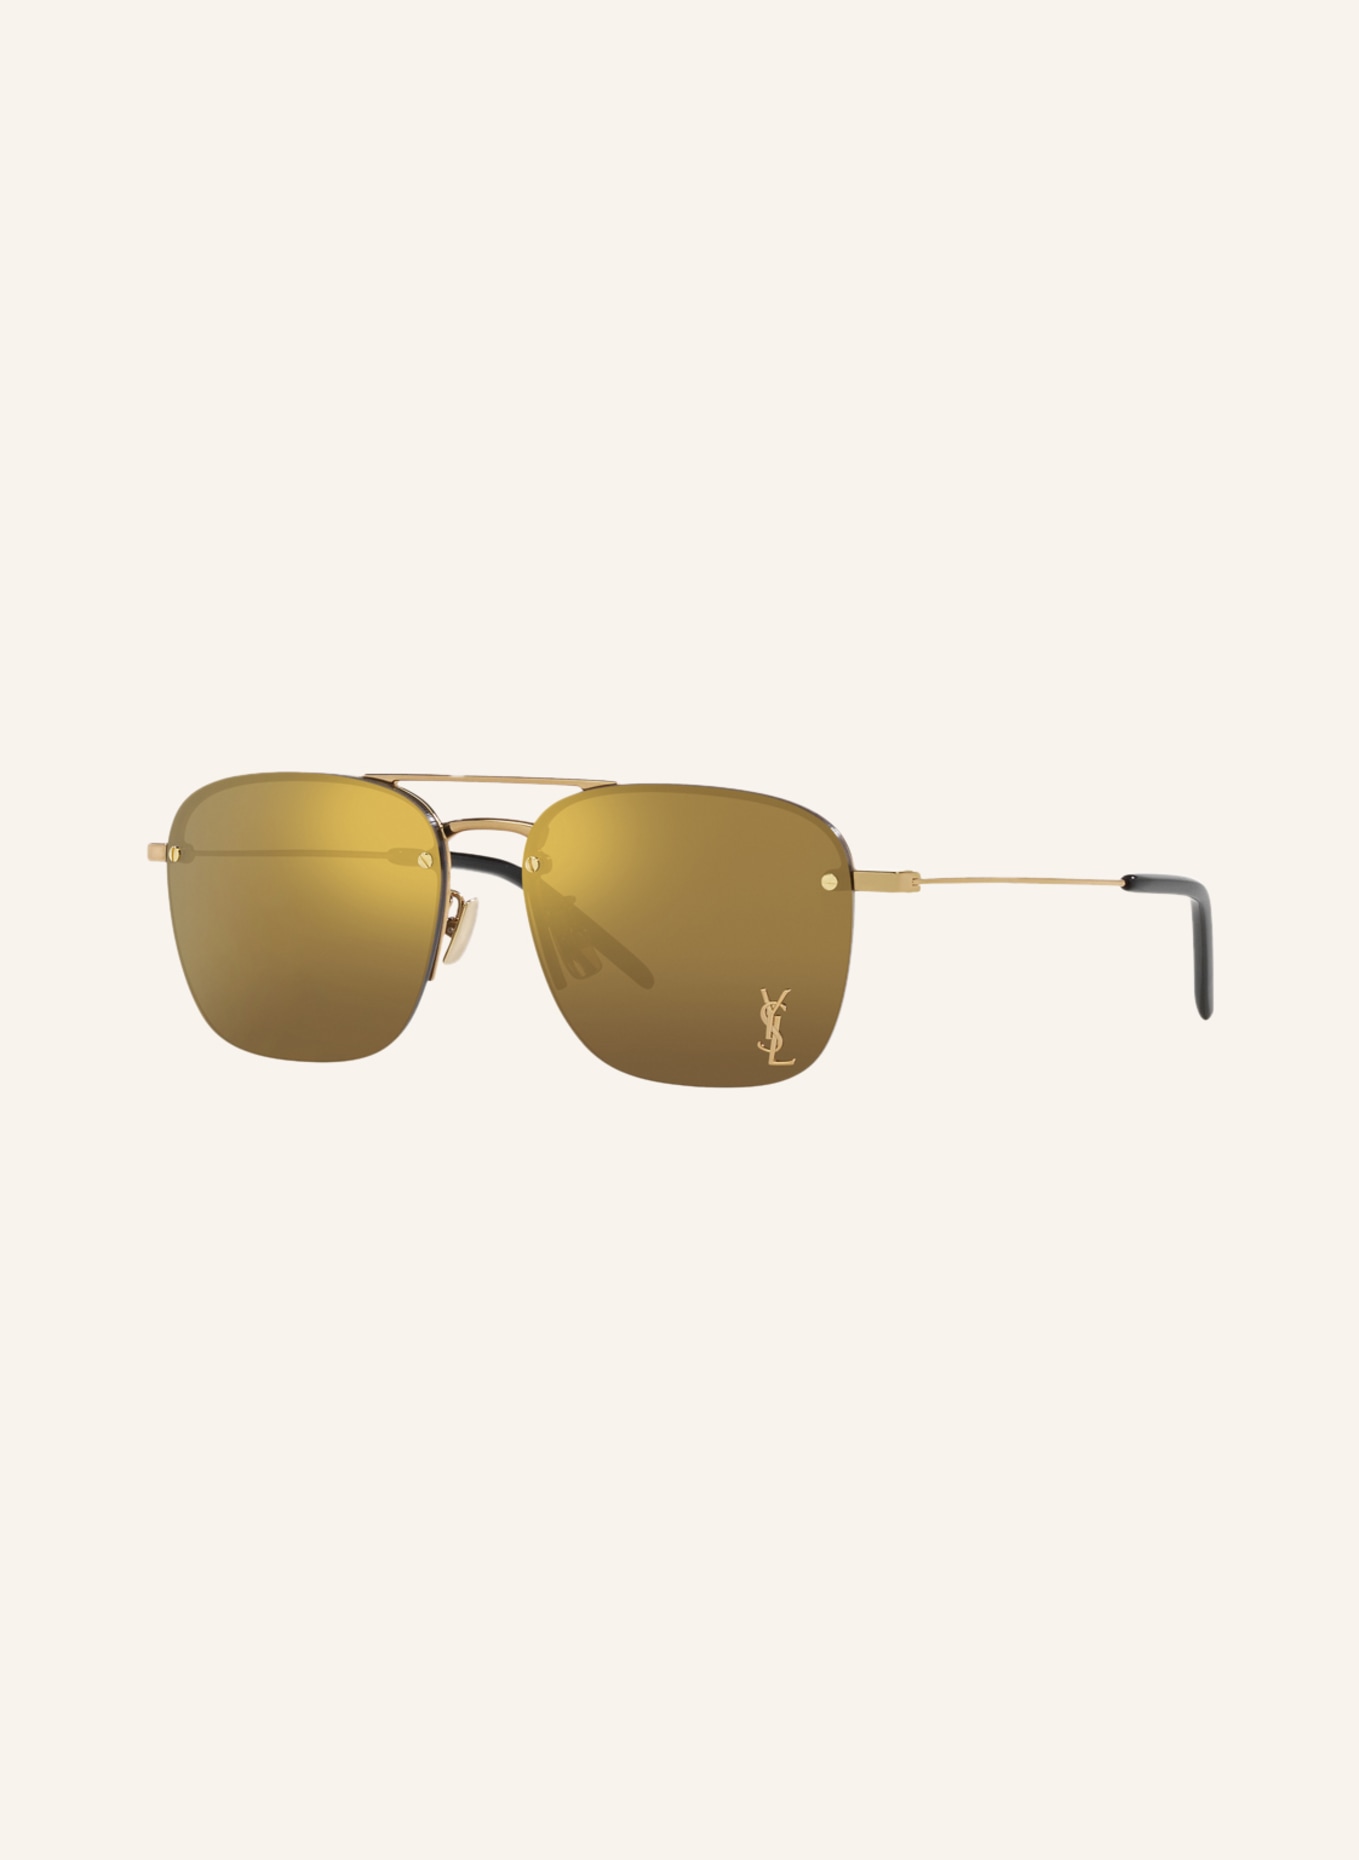 SAINT LAURENT Sunglasses YS000490, Color: 1700D1 - GOLD/ BROWN (Image 1)